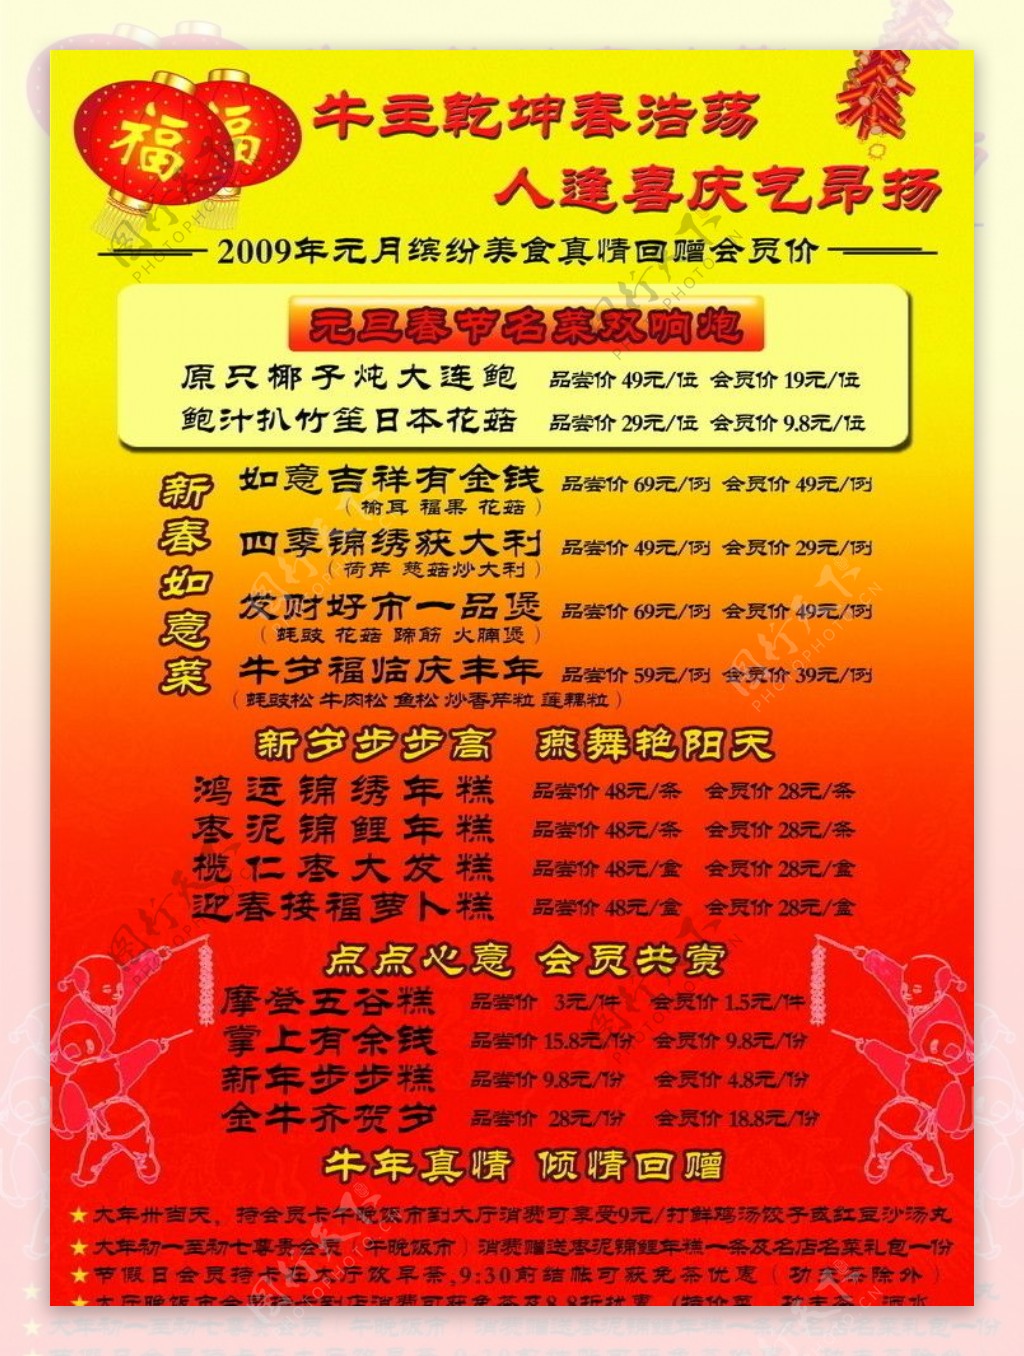 春节元旦菜式宣传单